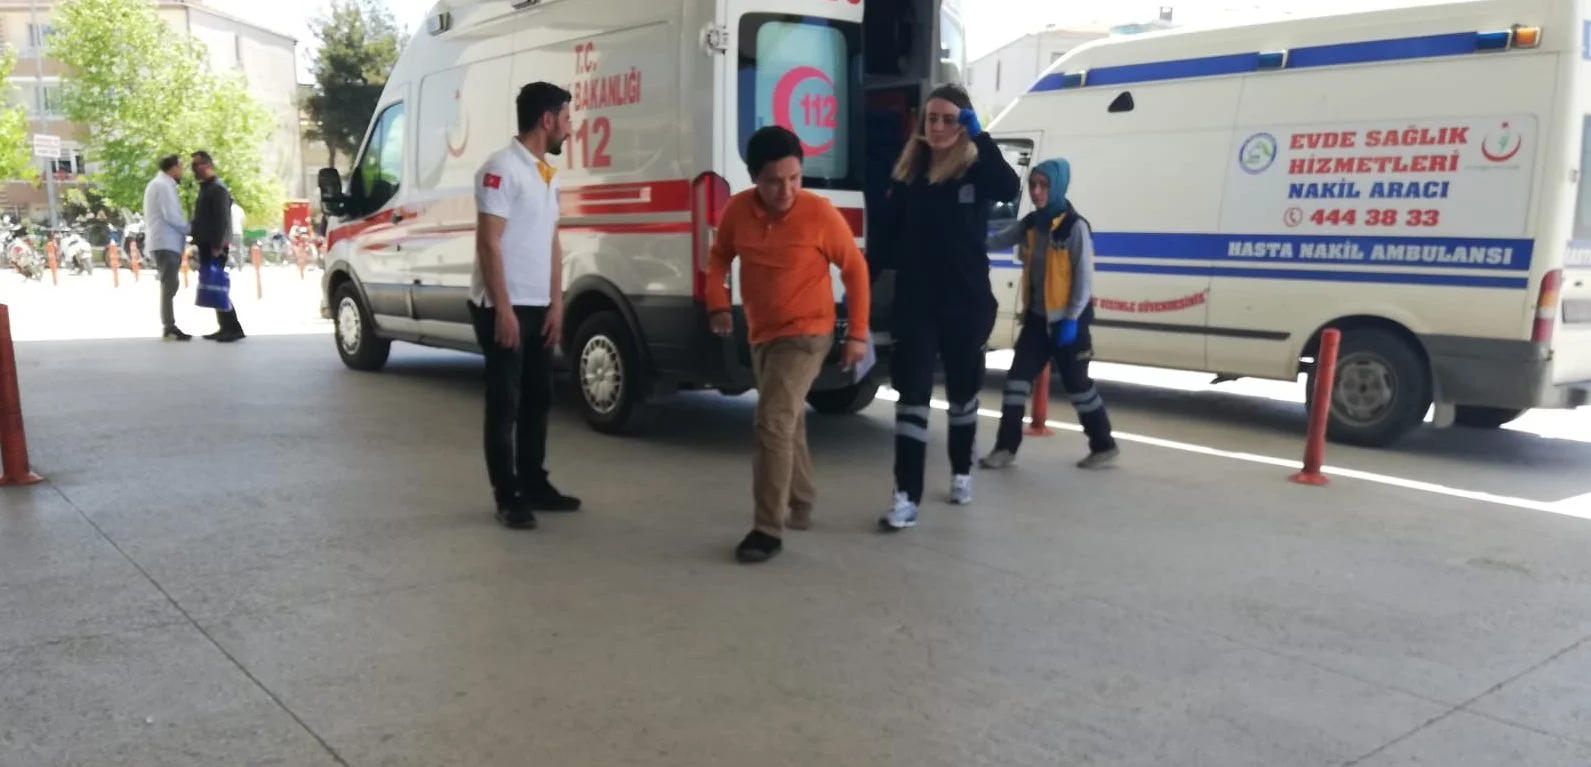 Bursa'da yeni bir köpek vakası! Küçük çocuk ayağından yaralandı